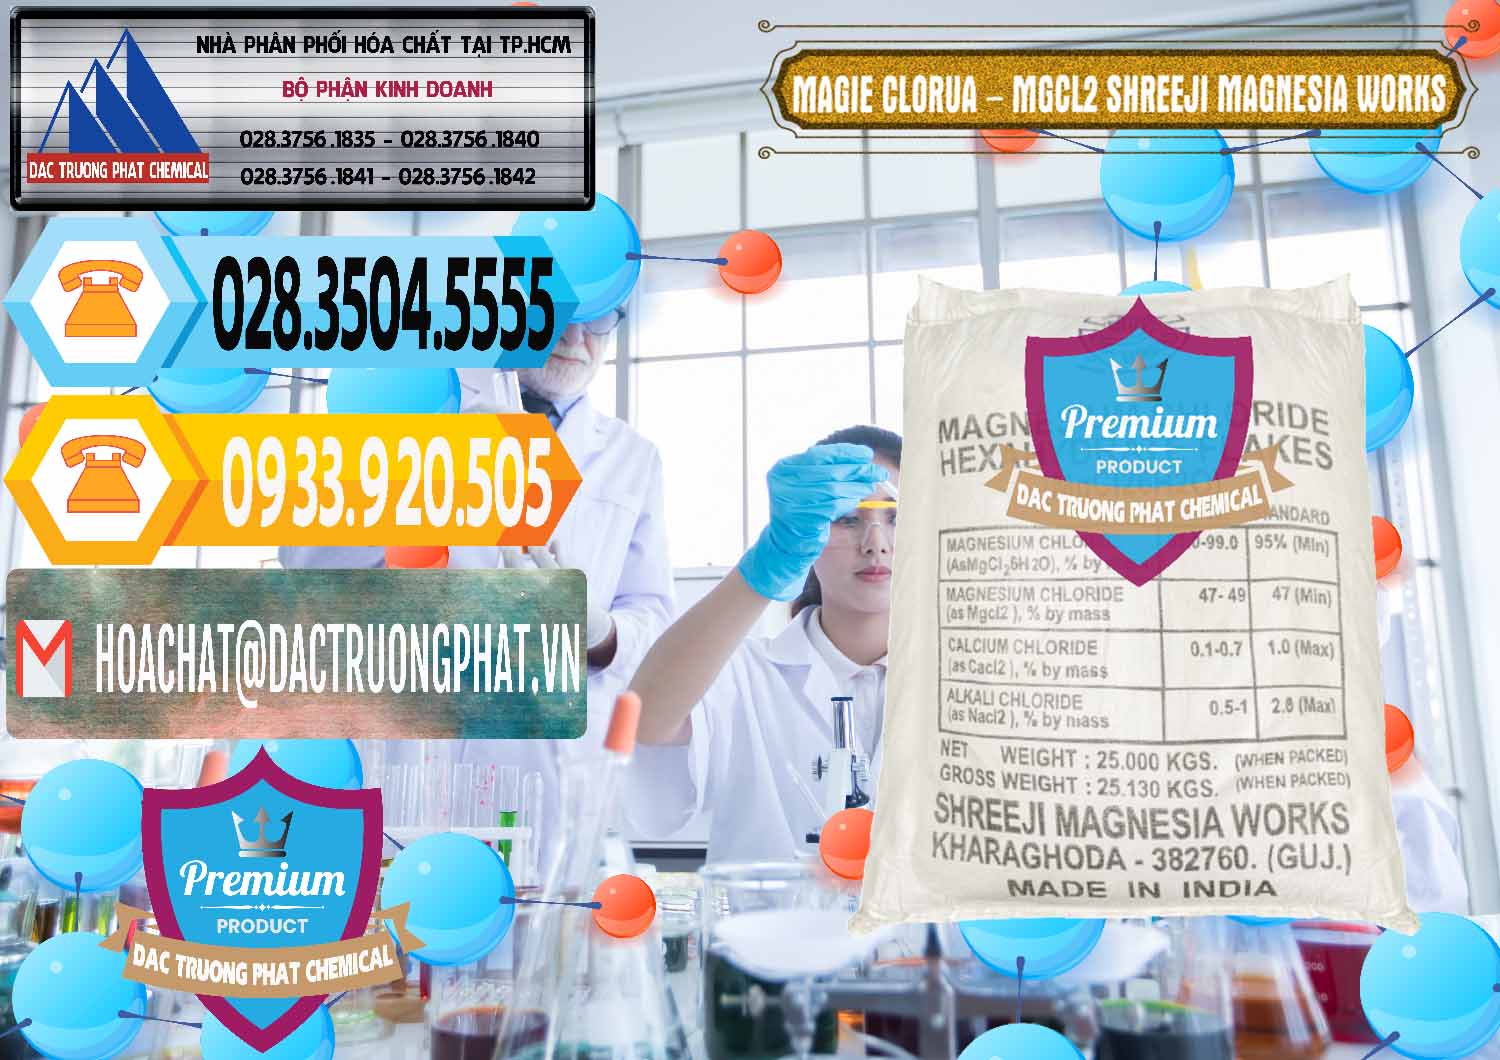 Chuyên cung cấp và bán Magie Clorua – MGCL2 Dạng Vảy Shreeji Magnesia Works Ấn Độ India - 0285 - Nơi bán - cung cấp hóa chất tại TP.HCM - hoachattayrua.net